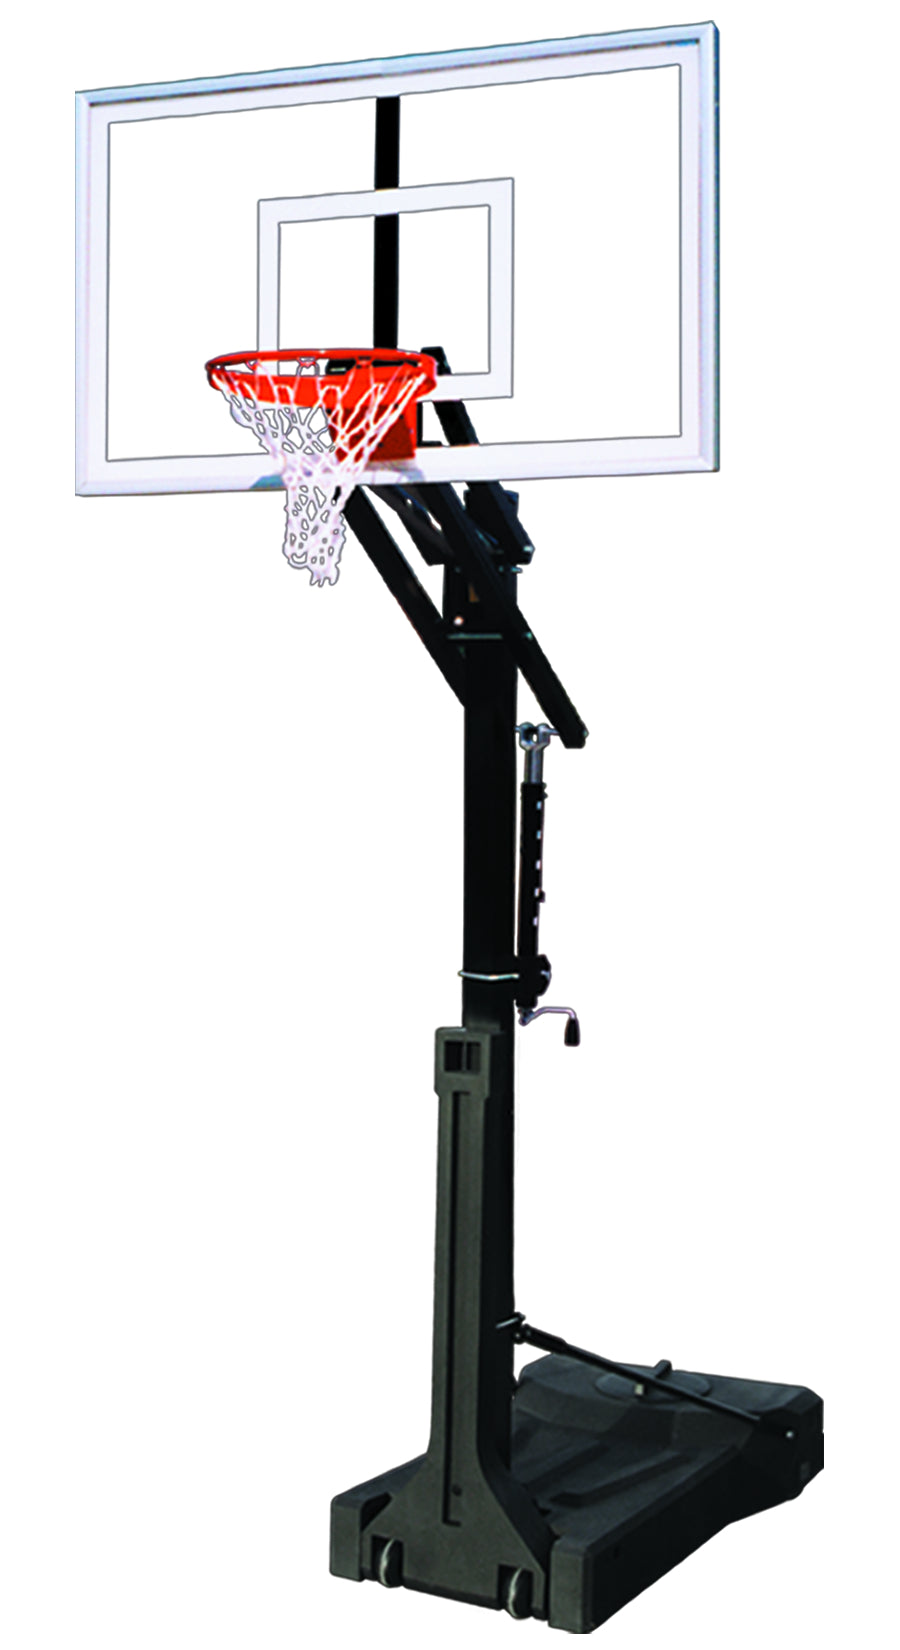 First Team OmniJam Select Portable Basketball Goal - 36"x60" Acrylic